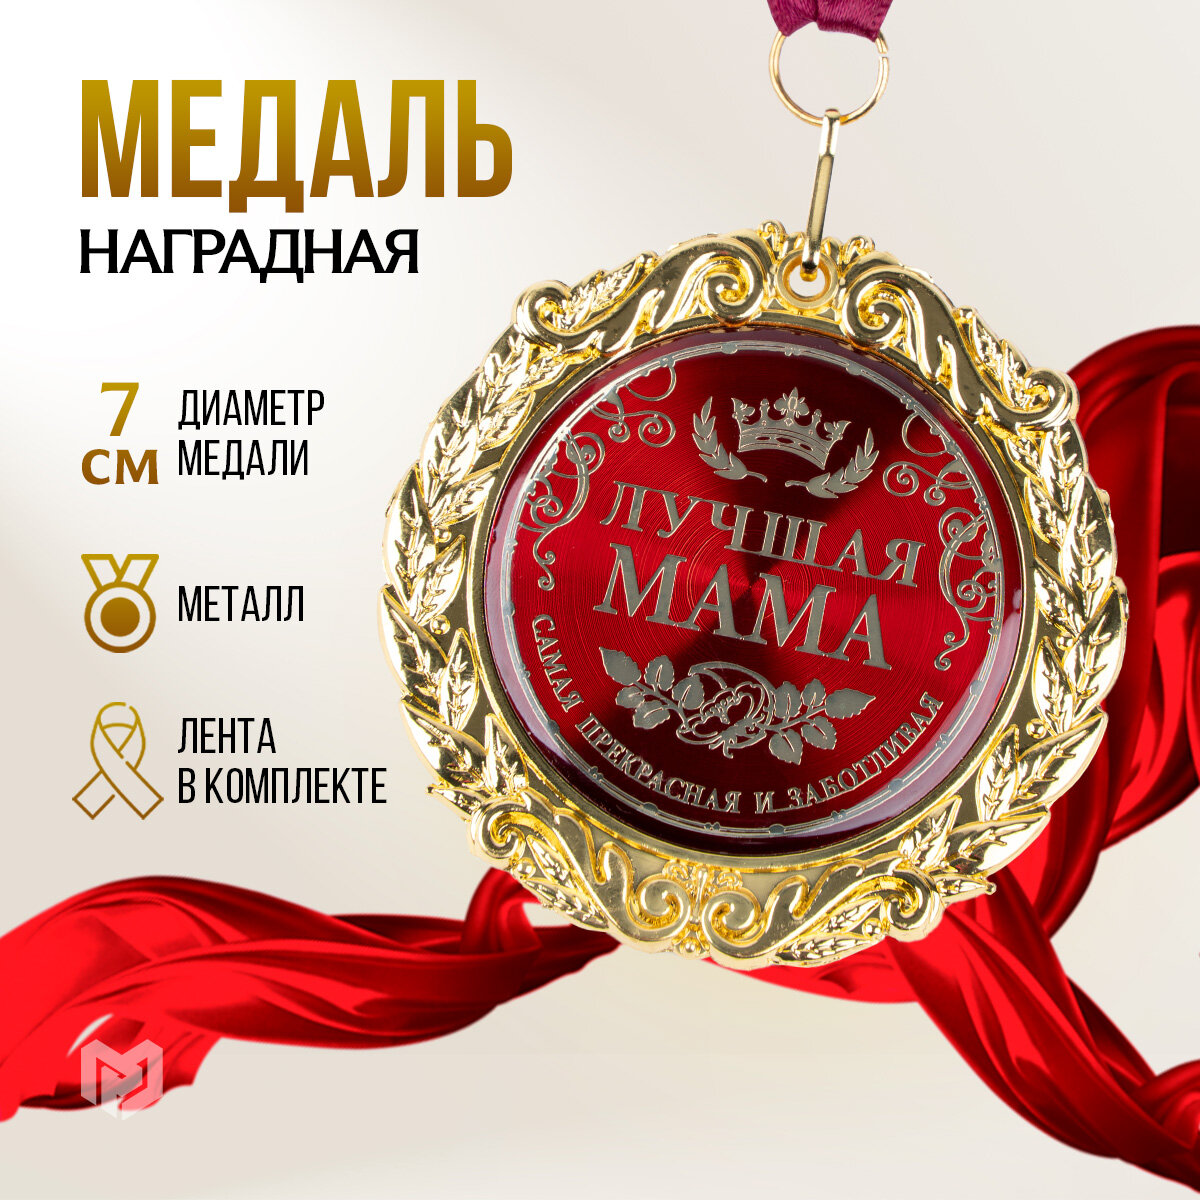 Медаль подарочная сувенирная на открытке "Лучшая мама", d=7 см